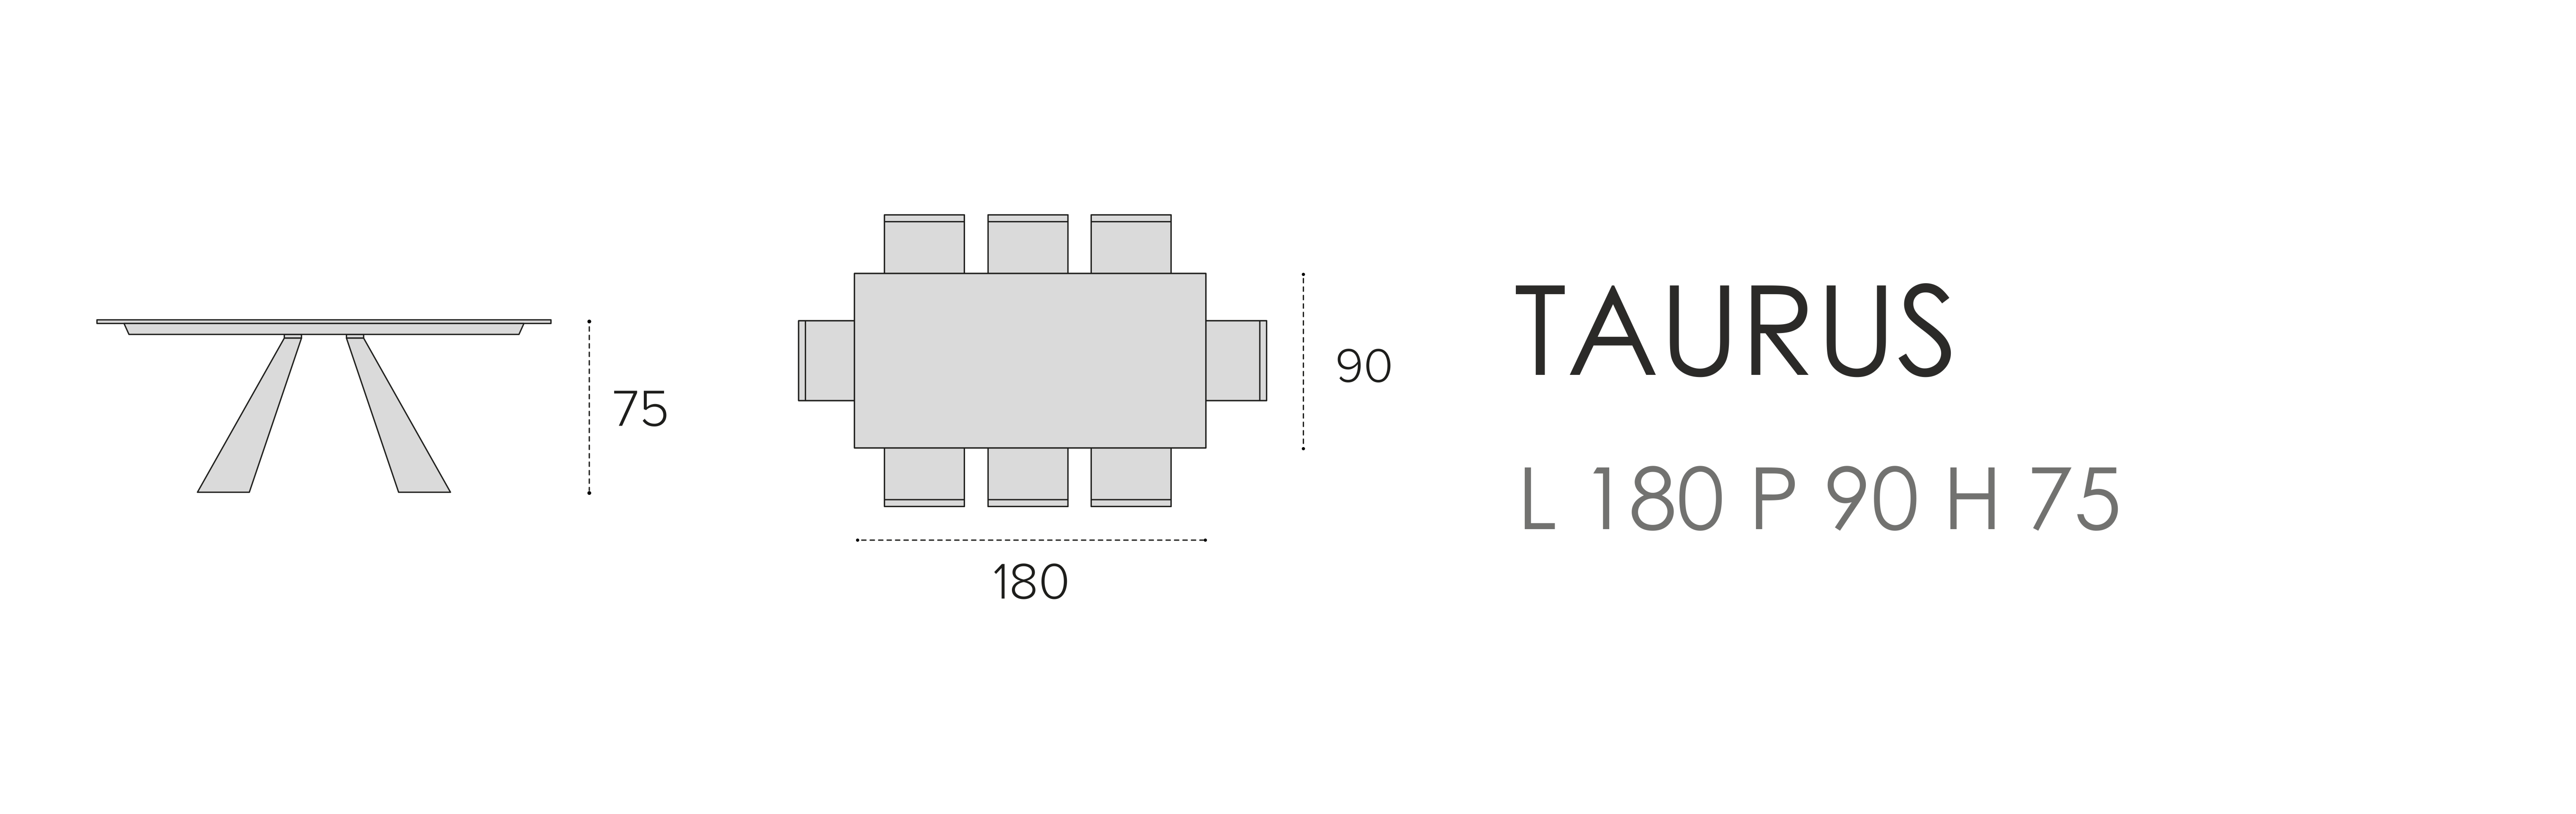 Taurus L 180 P 90 H 75